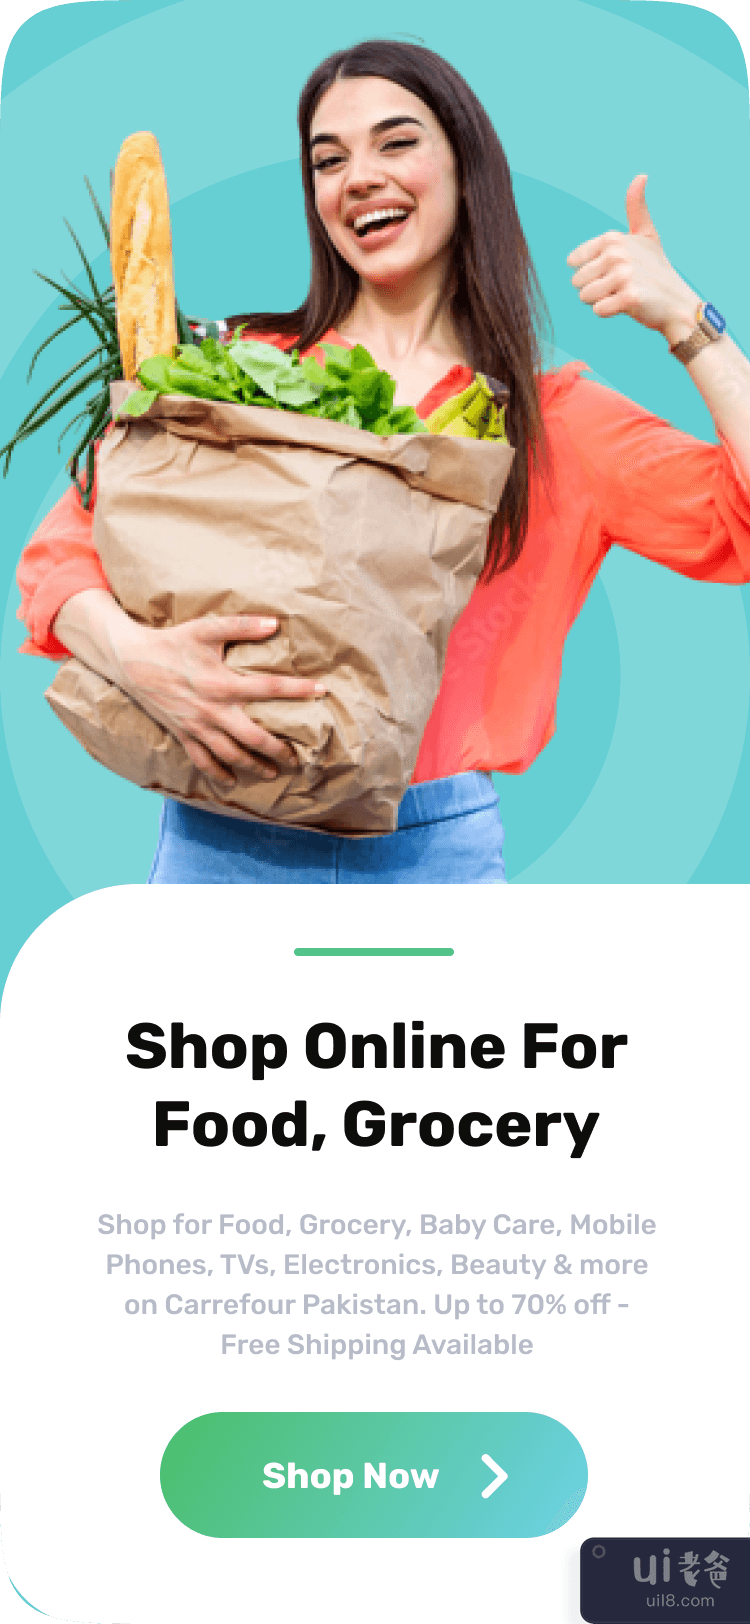 杂货应用程序 iOS 移动 UI 套件 - 食品配送应用程序(Grocery app iOS Mobile UI Kits - Food Delivery App)插图